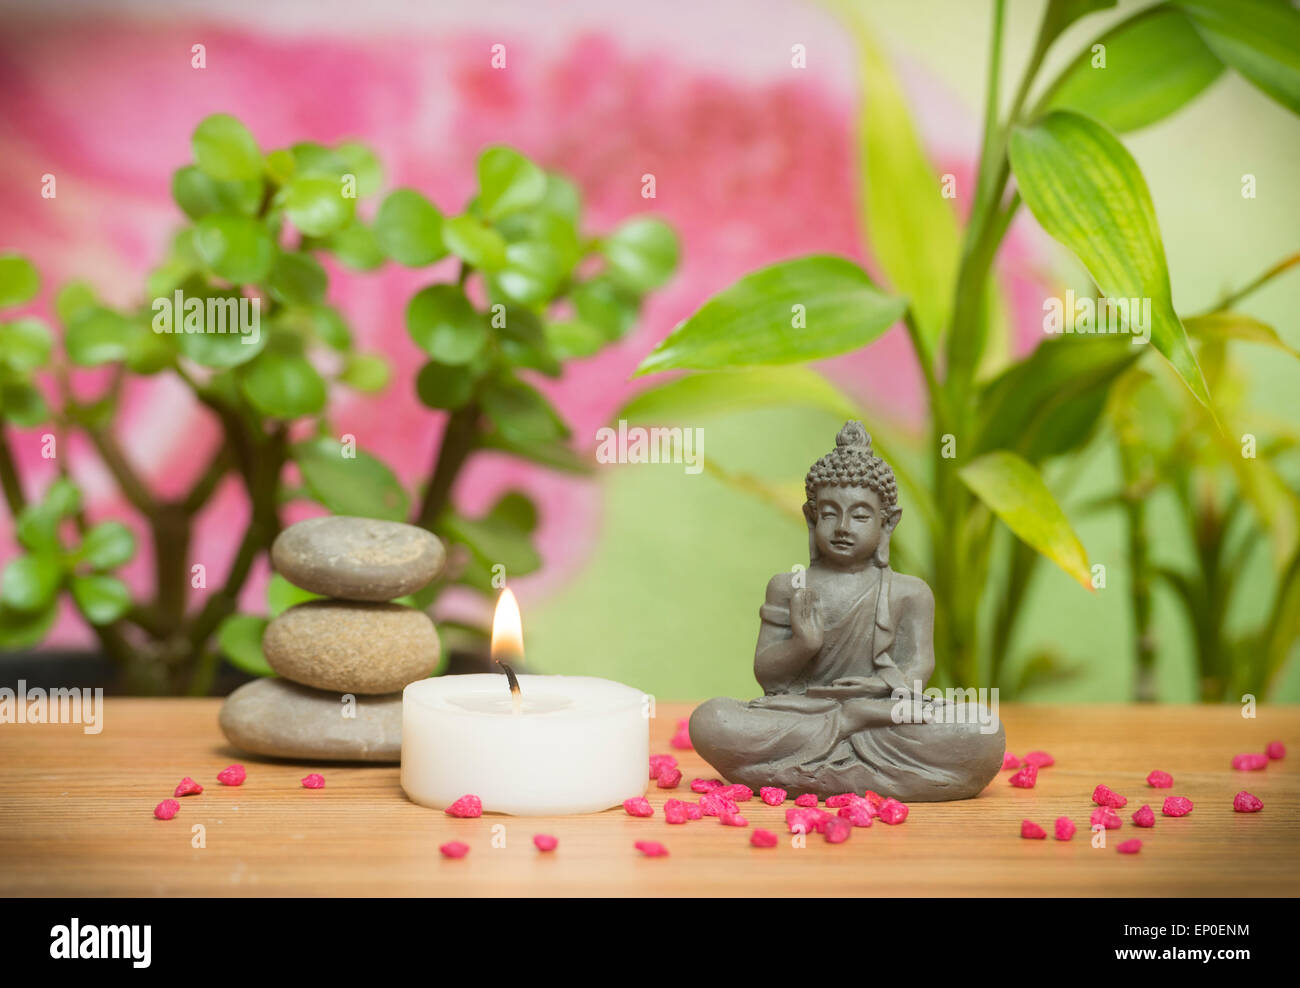 Relaxing zen garden Stock Photo - Alamy